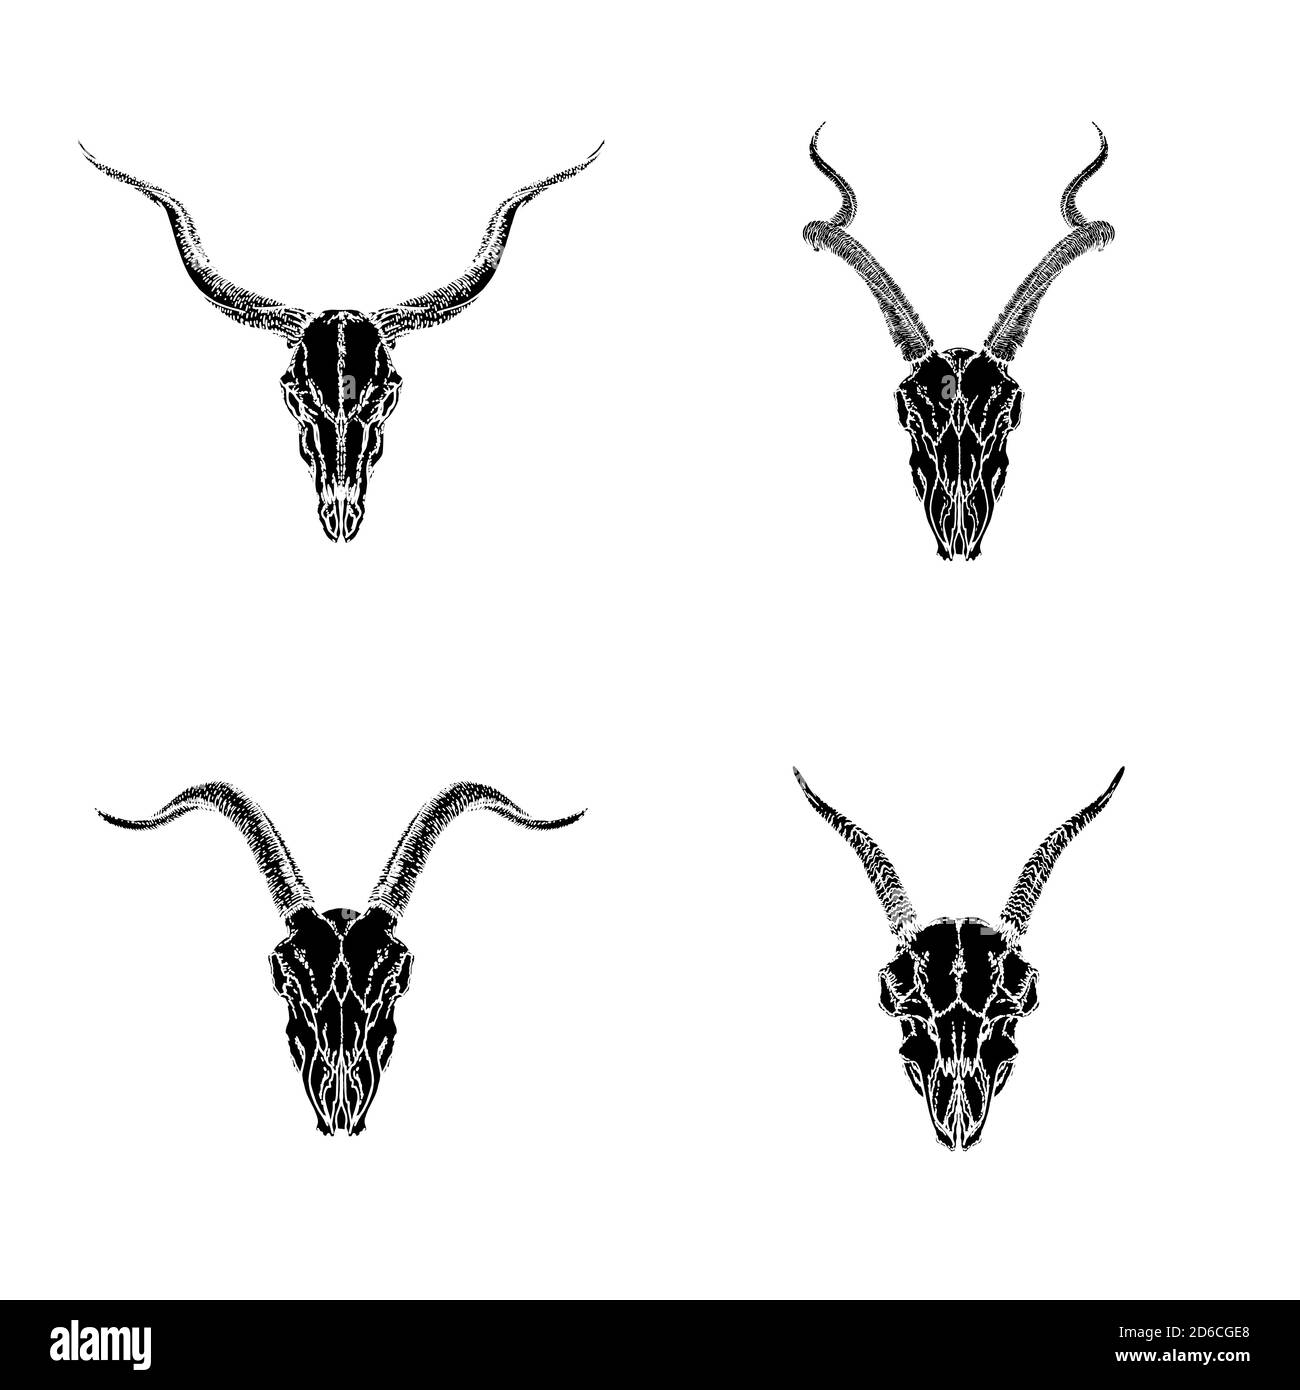 Vektor-Set von handgezeichneten Schädeln von gehörnten Tieren: Antilopen und Ziegen auf weißem Hintergrund. Schwarze Silhouetten. Für Sie entwerfen, drucken, Tattoo oder Magie Stock Vektor